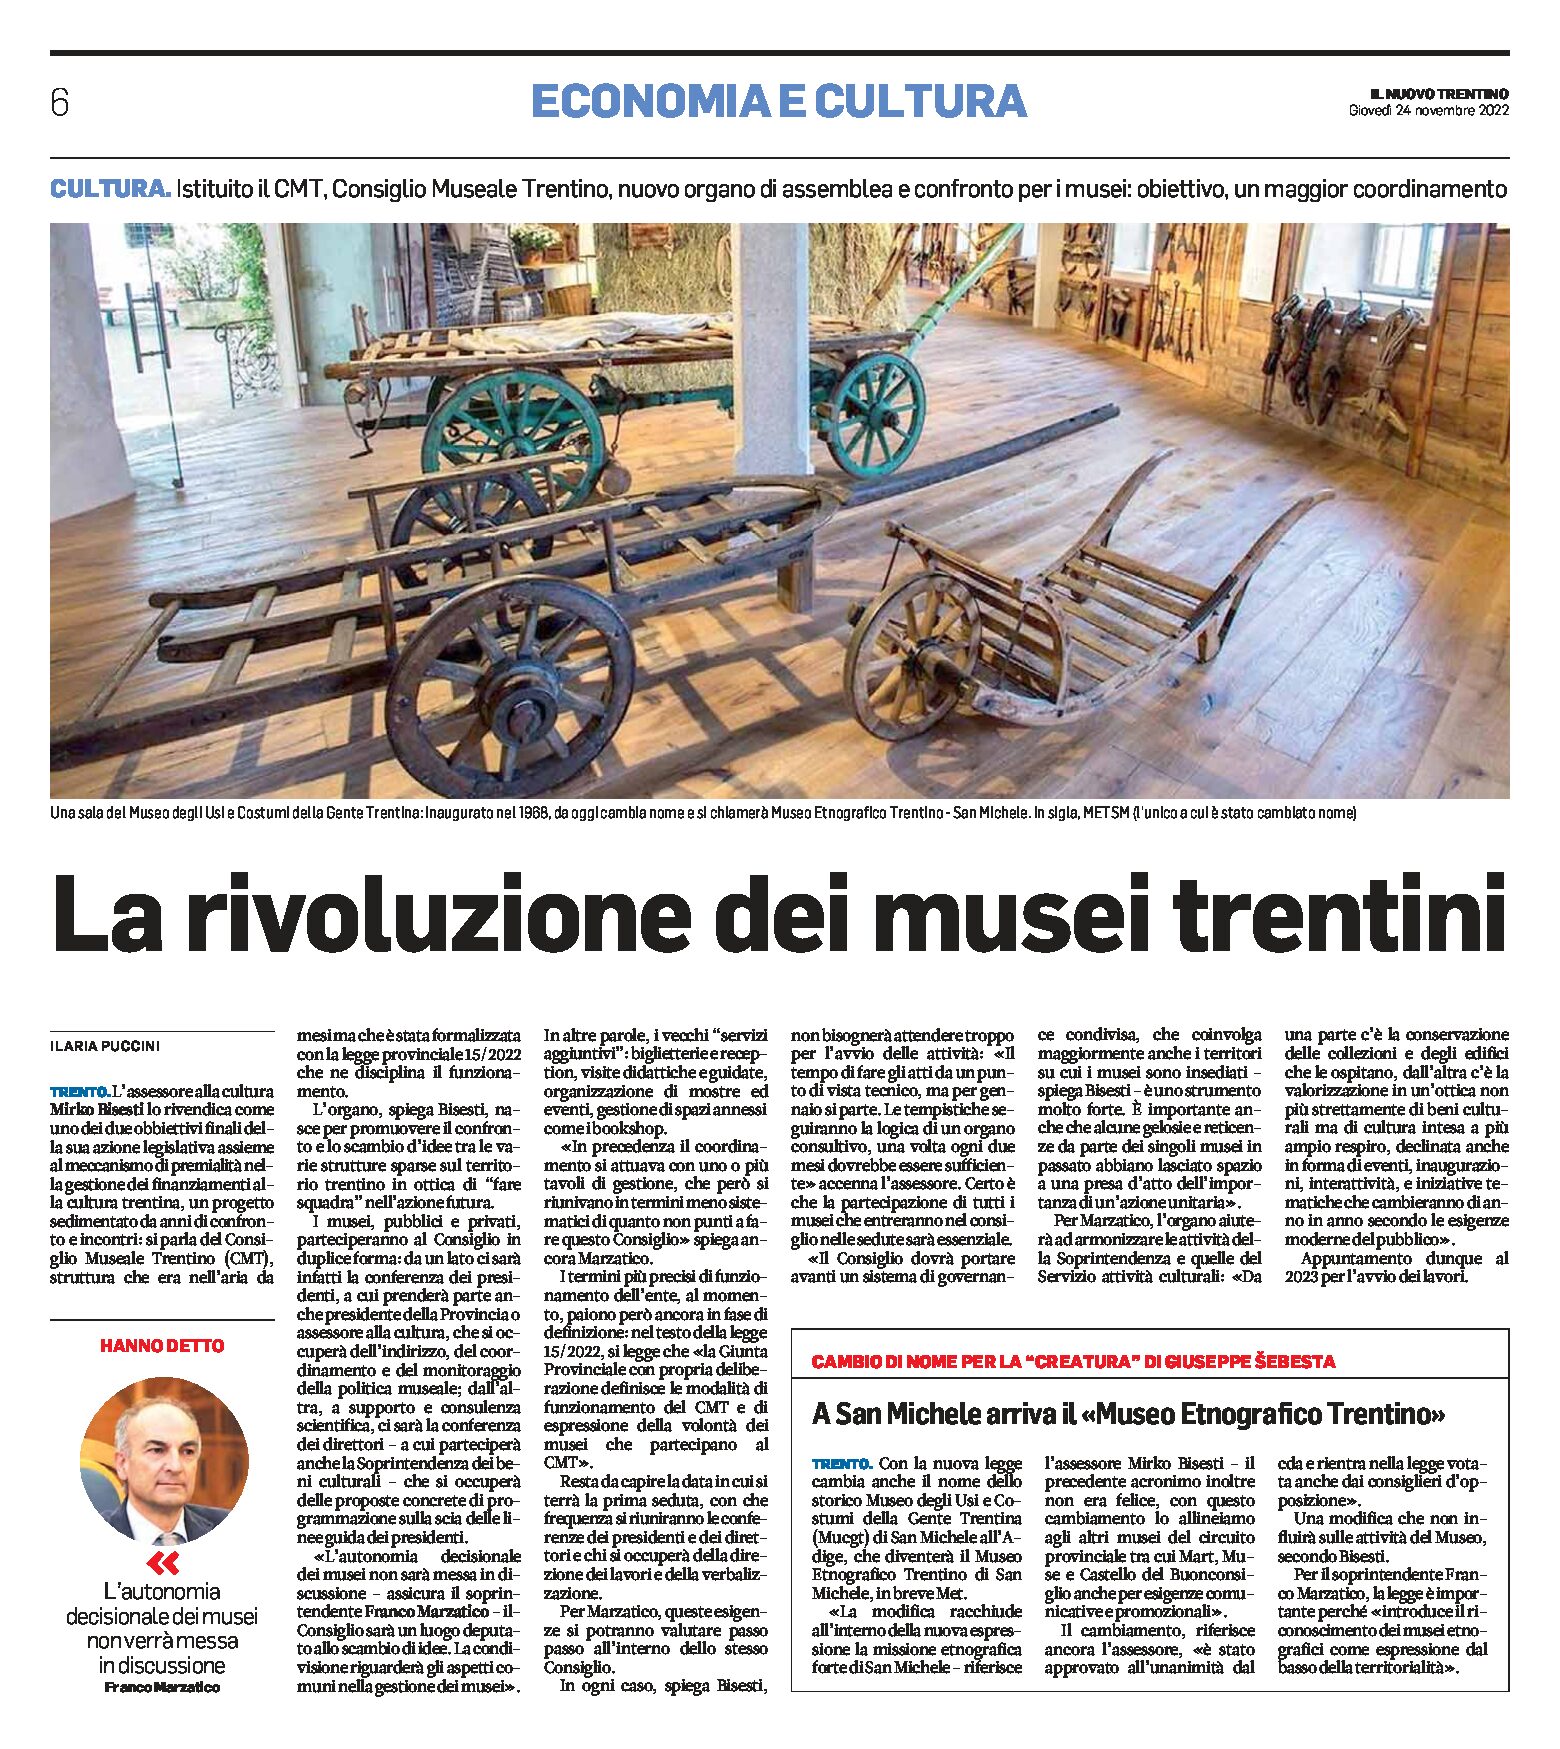 Rivoluzione dei musei trentini. Istituito il CMT Consiglio Museale Trentino